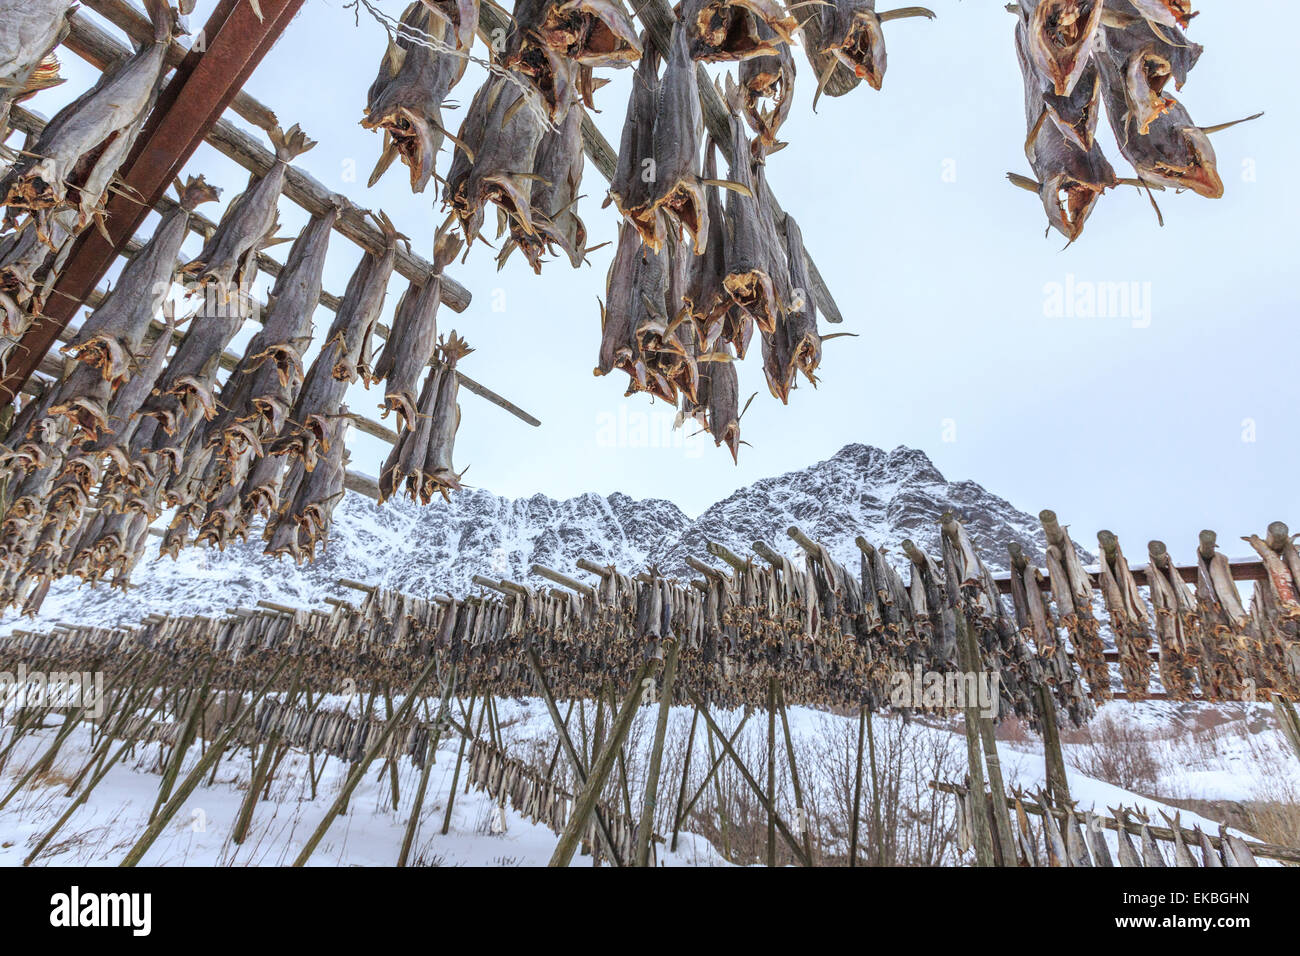 Baccalà, il prodotto principale delle isole Lofoten esposti ad asciugare al sole ed aria, Hamnoy, Isole Lofoten artico, Norvegia Foto Stock